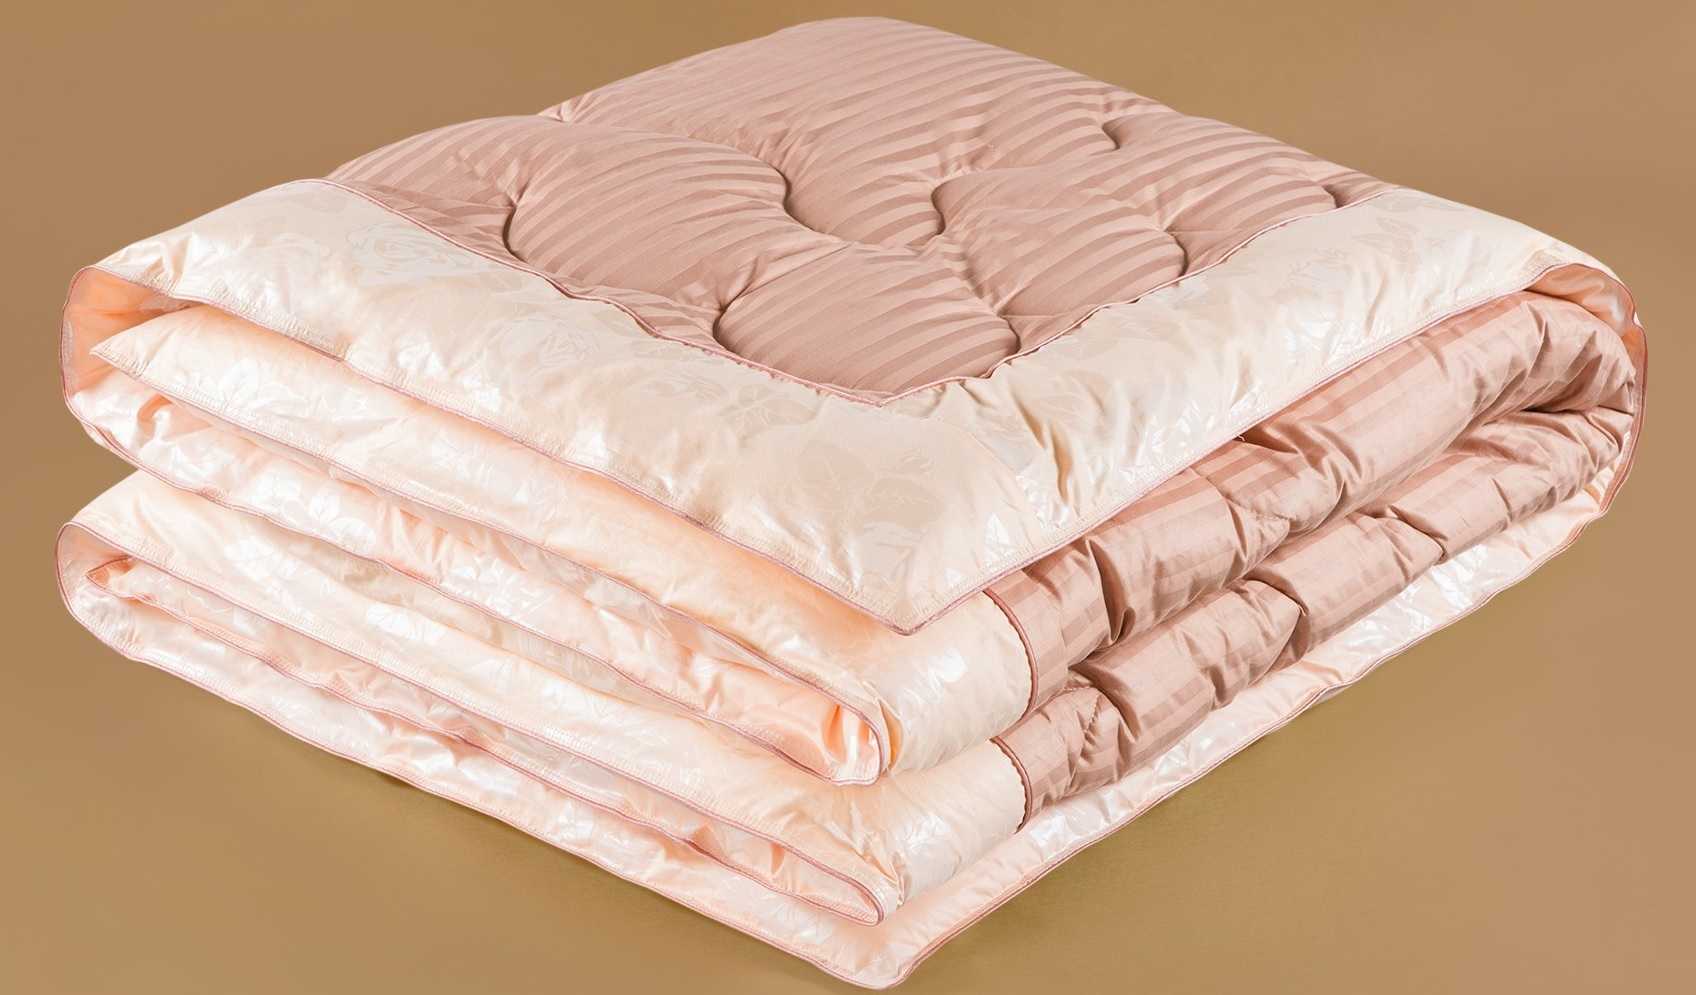 Каким должно быть правильное зимнее одеяло - 8 видов одеял для зимы, выбирайте своё!